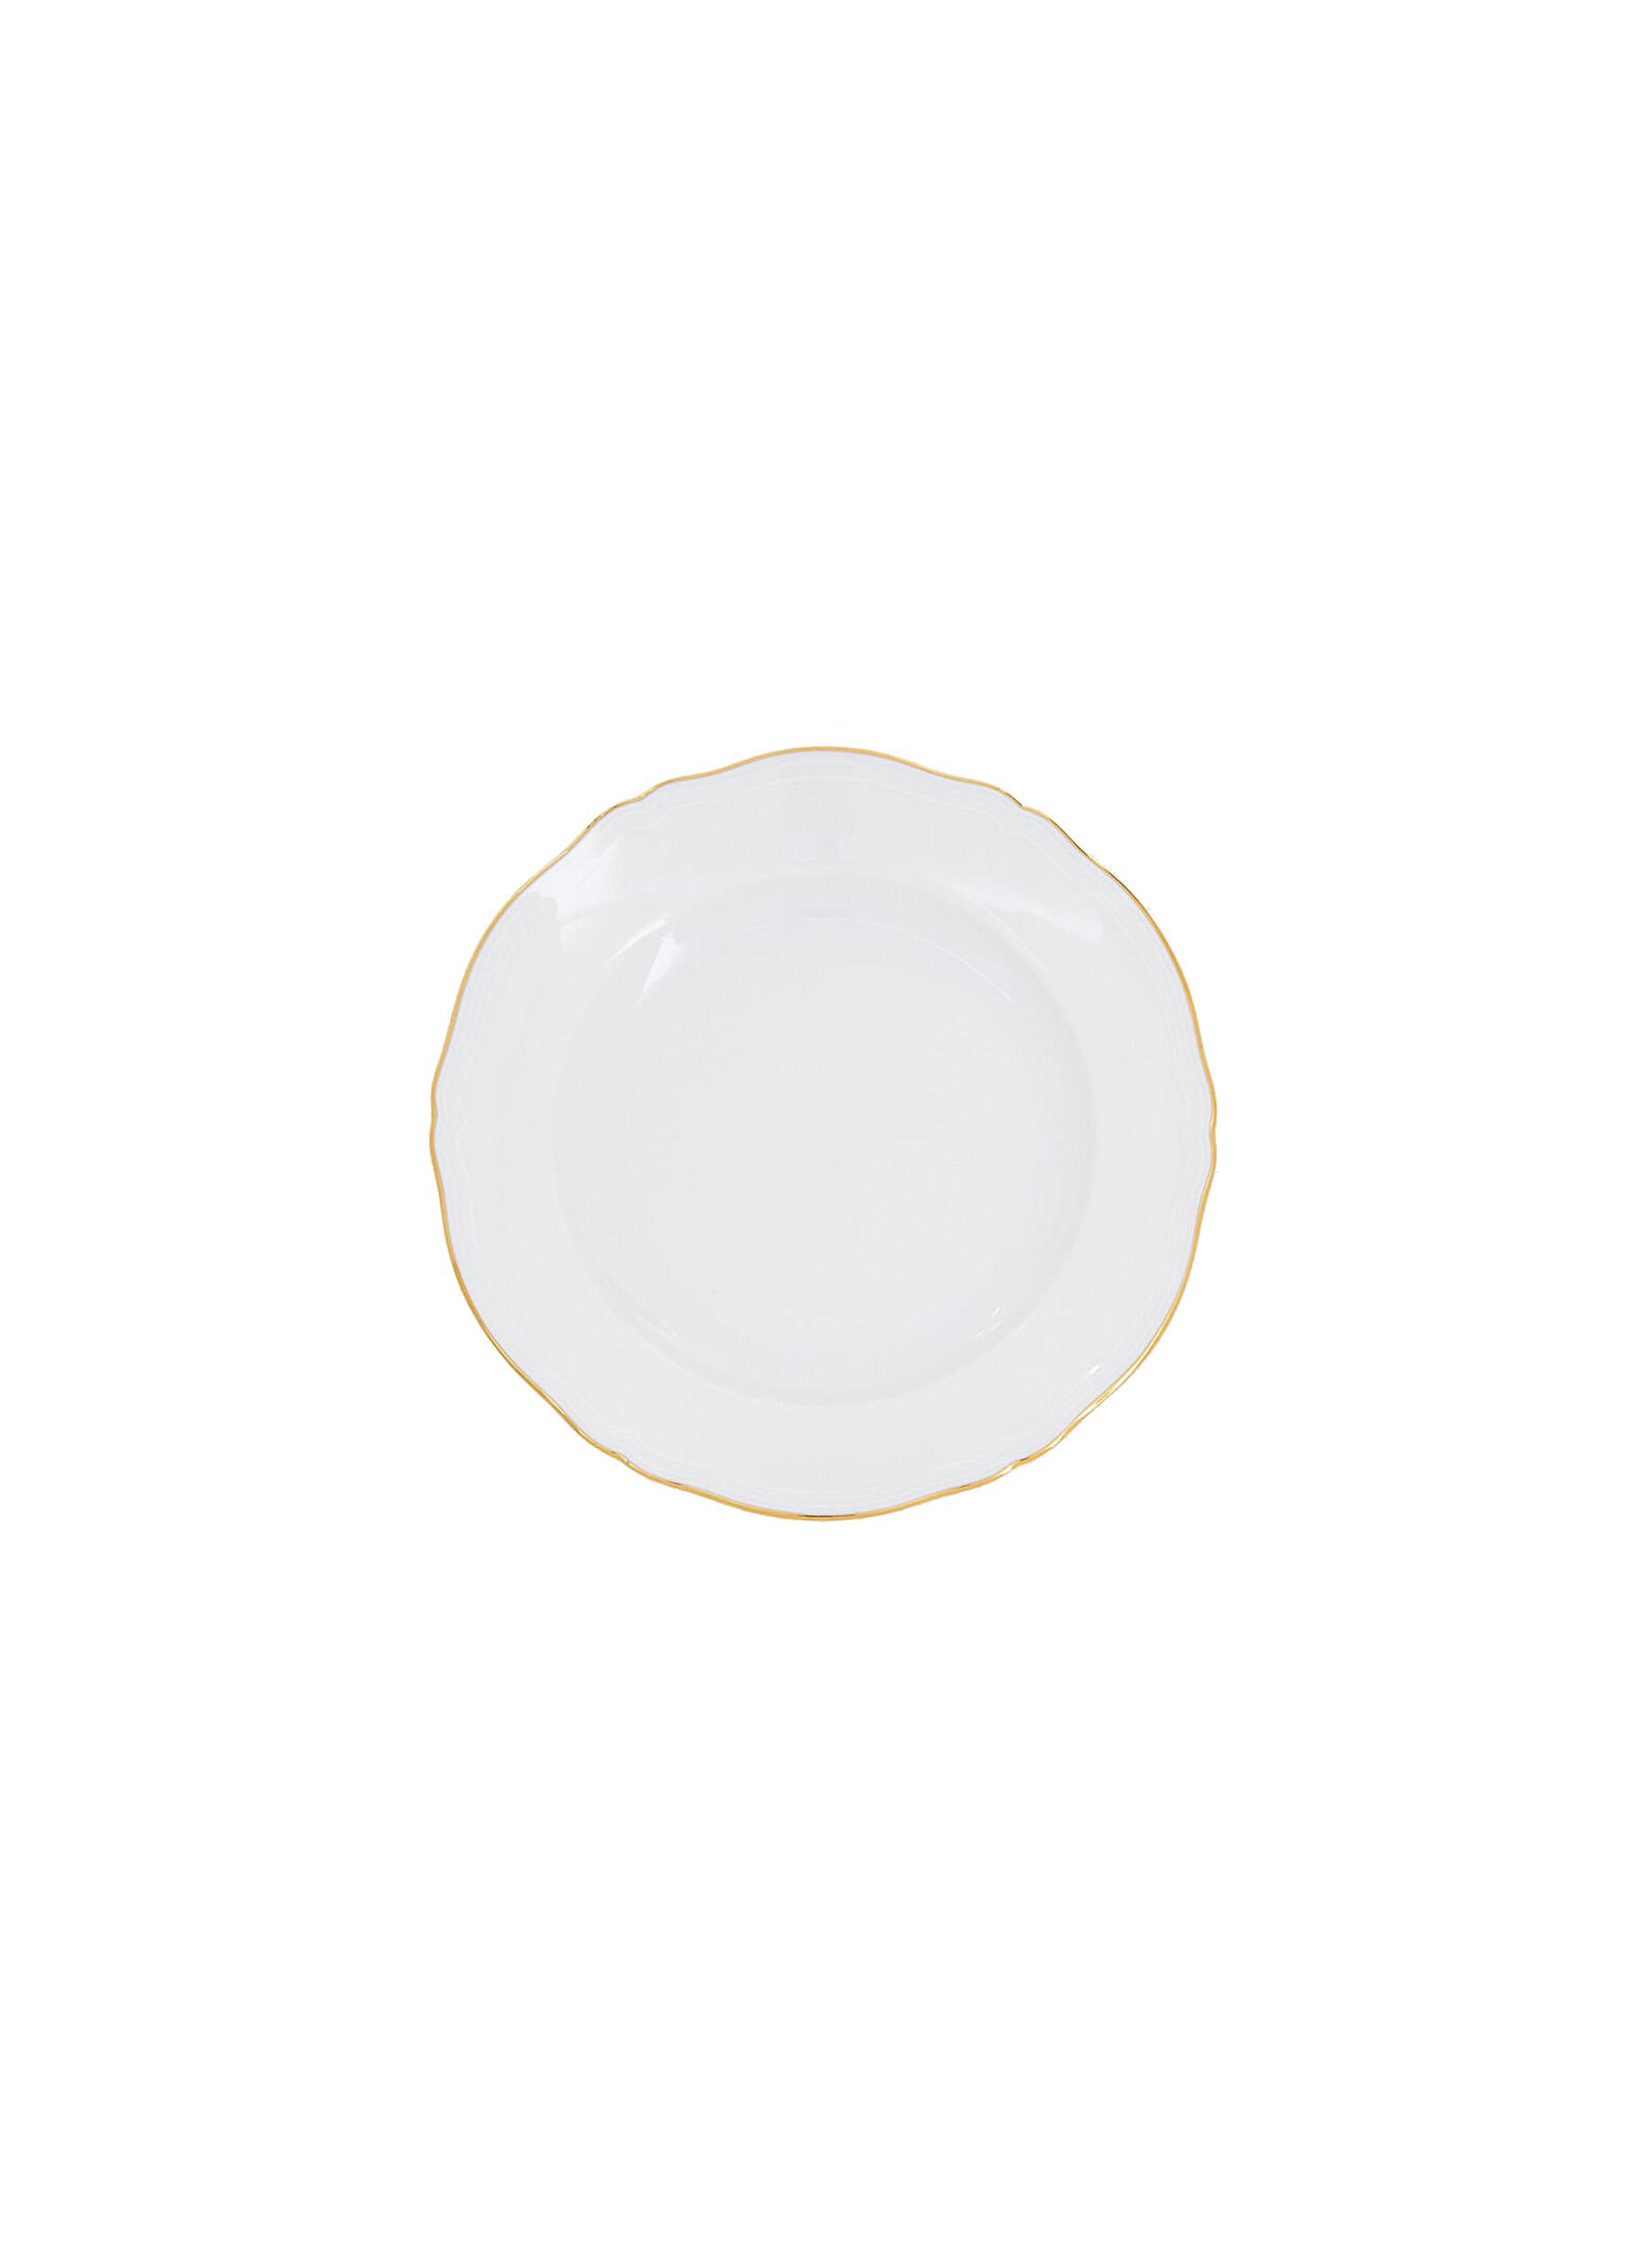 Corona Porcelain Bread Plate